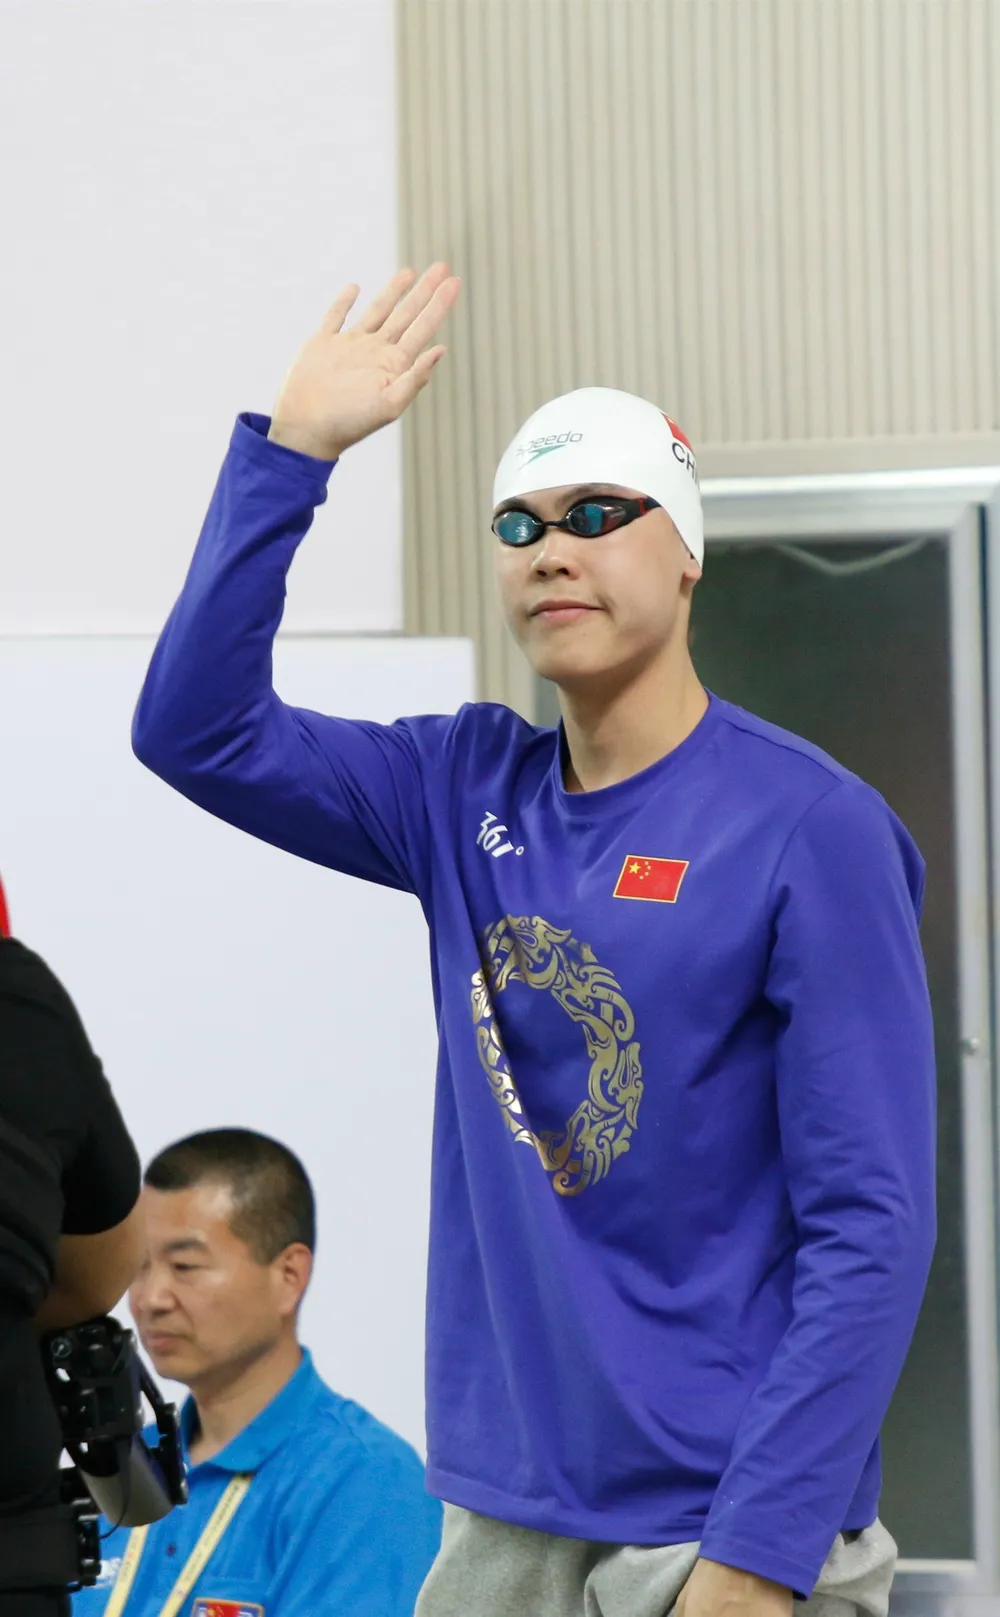 中国泳坛最帅的10个游泳运动员
1、宁泽涛，世锦赛100米自由泳冠军
2、汪顺，(8)